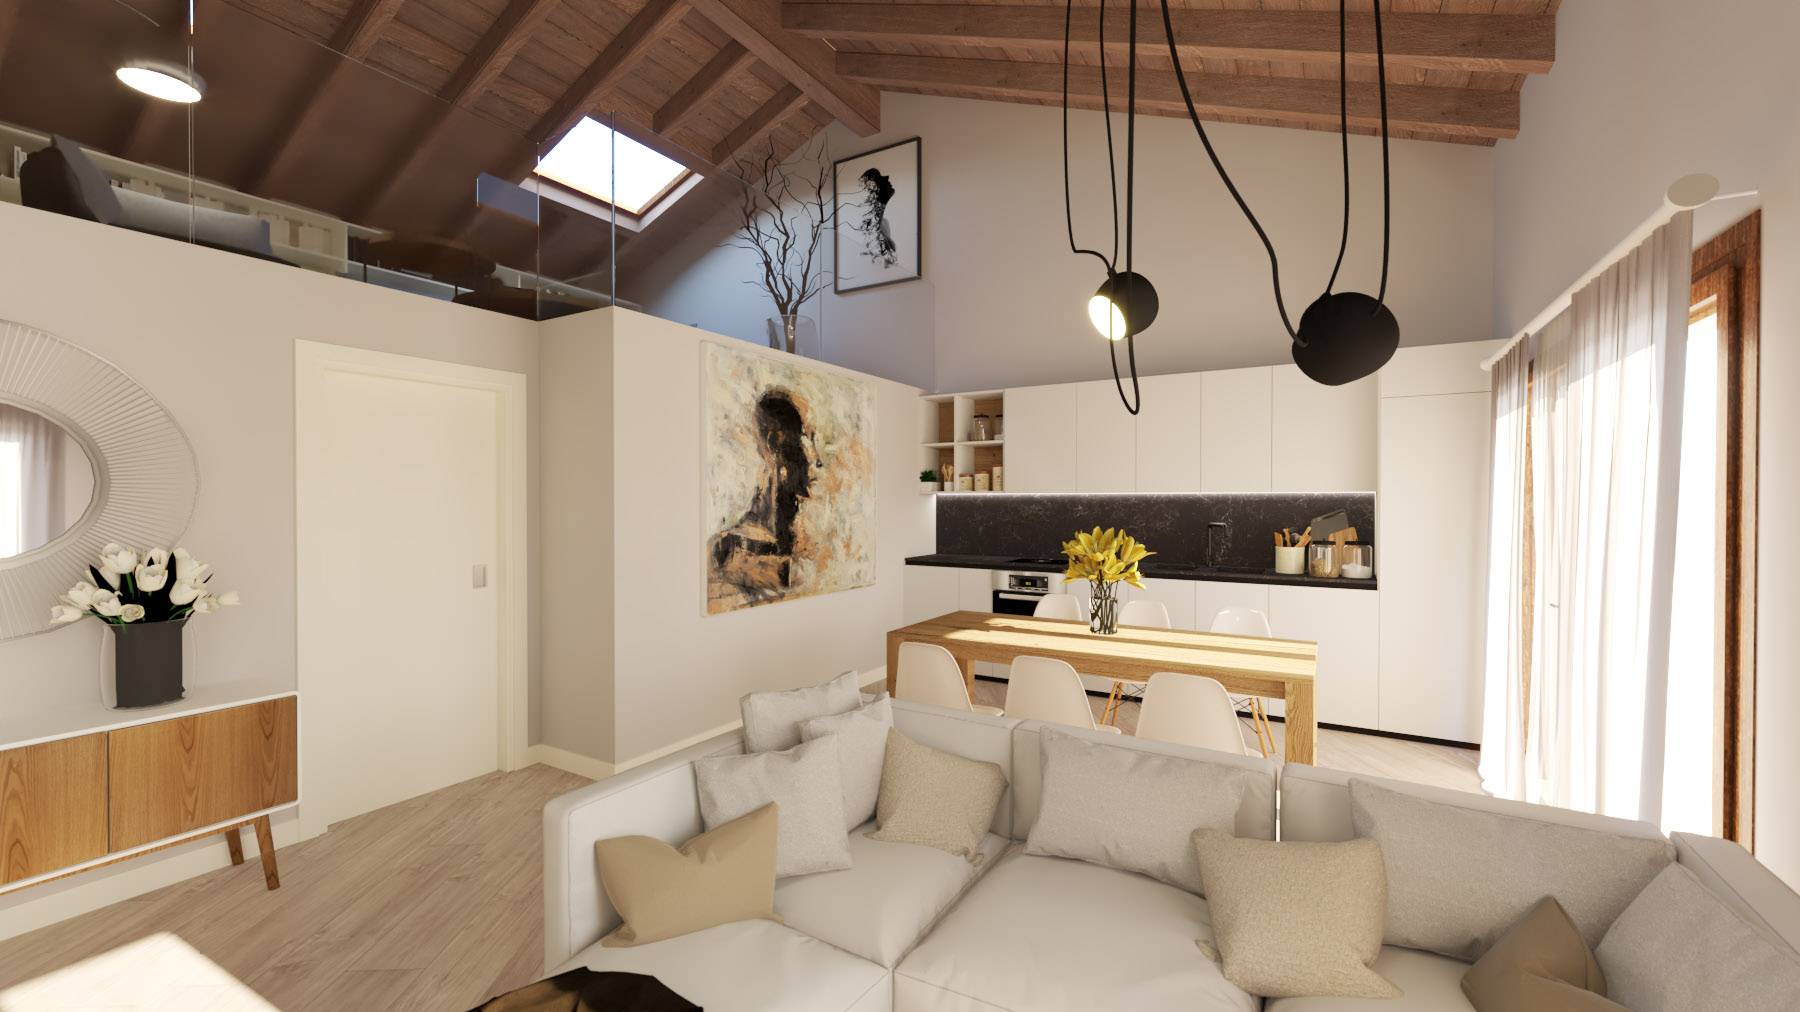 Abitazione - Appartamento in villa in provincia di Lecco